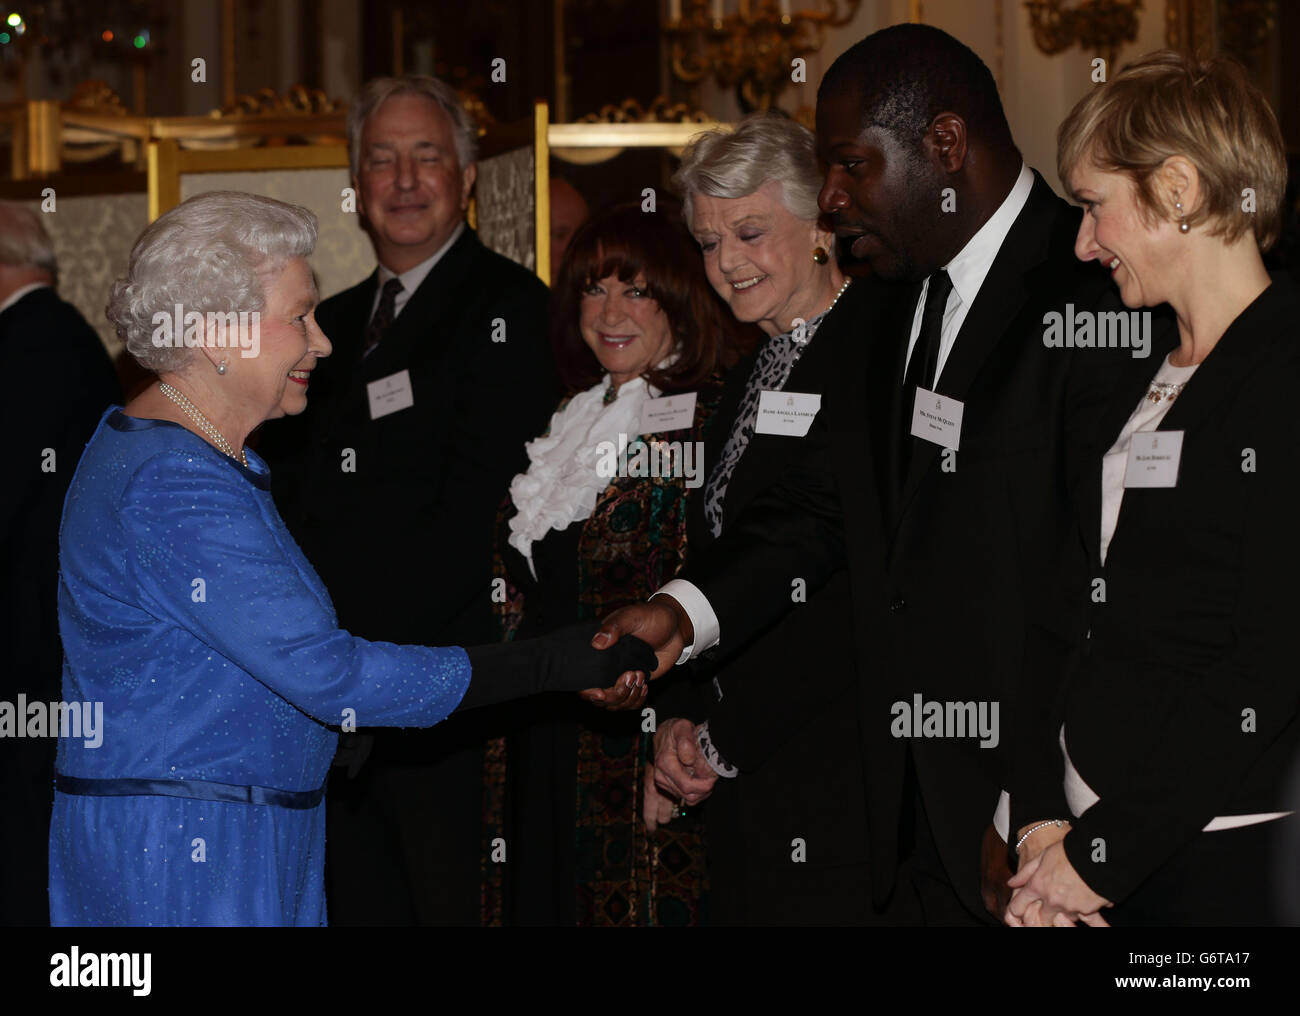 Queen Elizabeth II trifft Gäste, darunter Steve McQueen und Jane Horrocks, während eines Empfangs für die Dramatic Arts im Buckingham Palace, London. Stockfoto